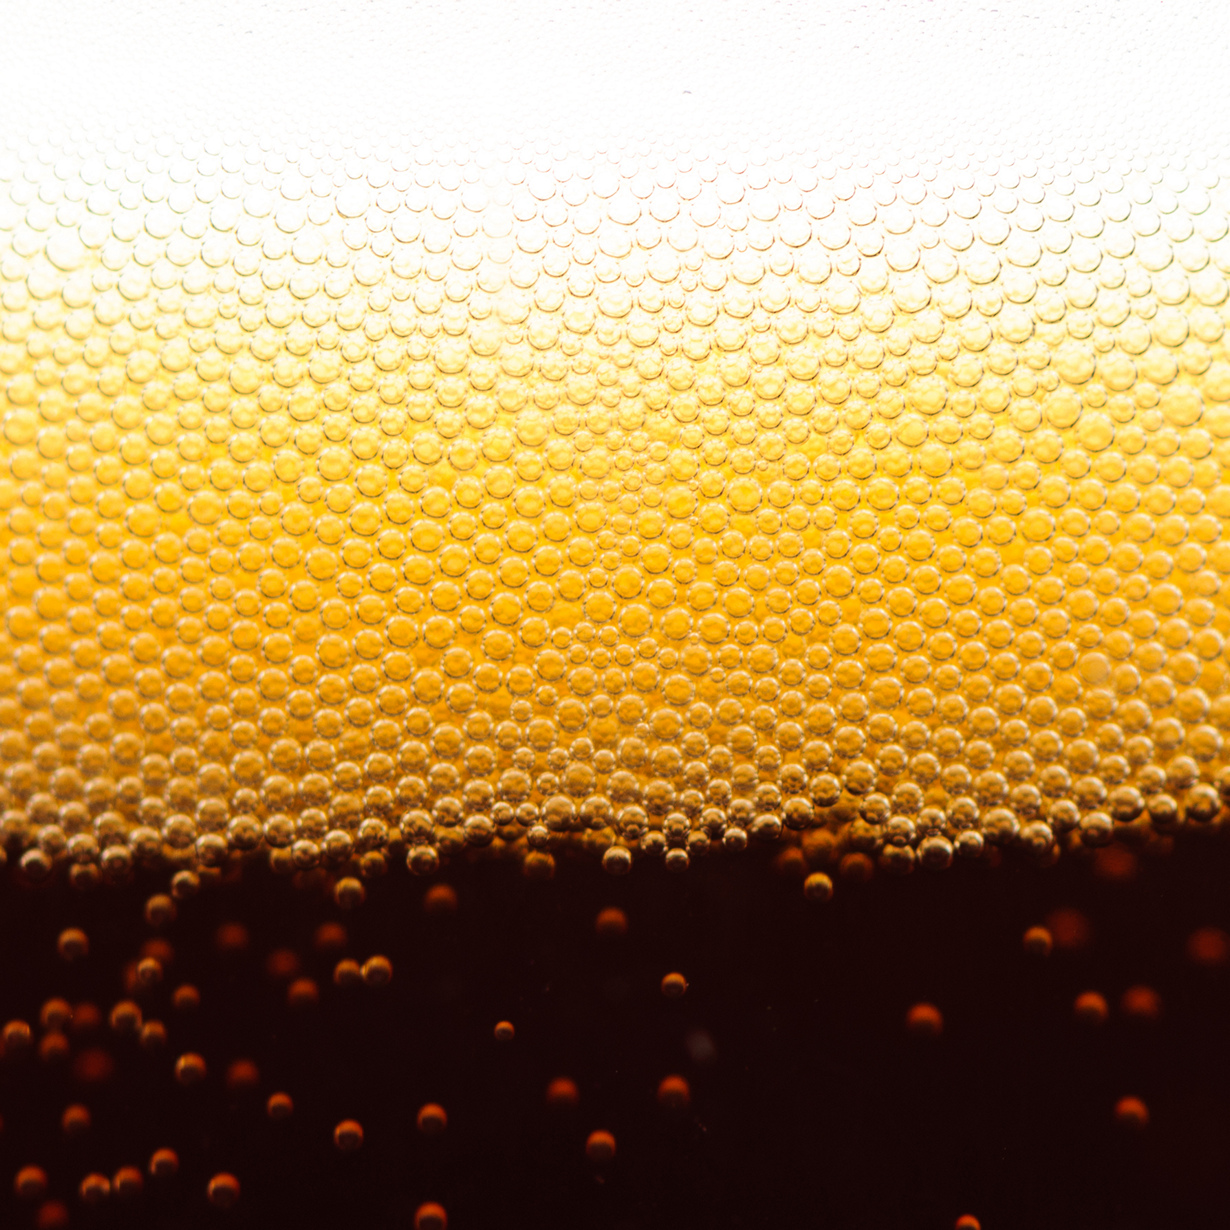 Старейшему из известных рецепту пива более 4 тыс. лет. Его авторами являются шумеры. (Eric)